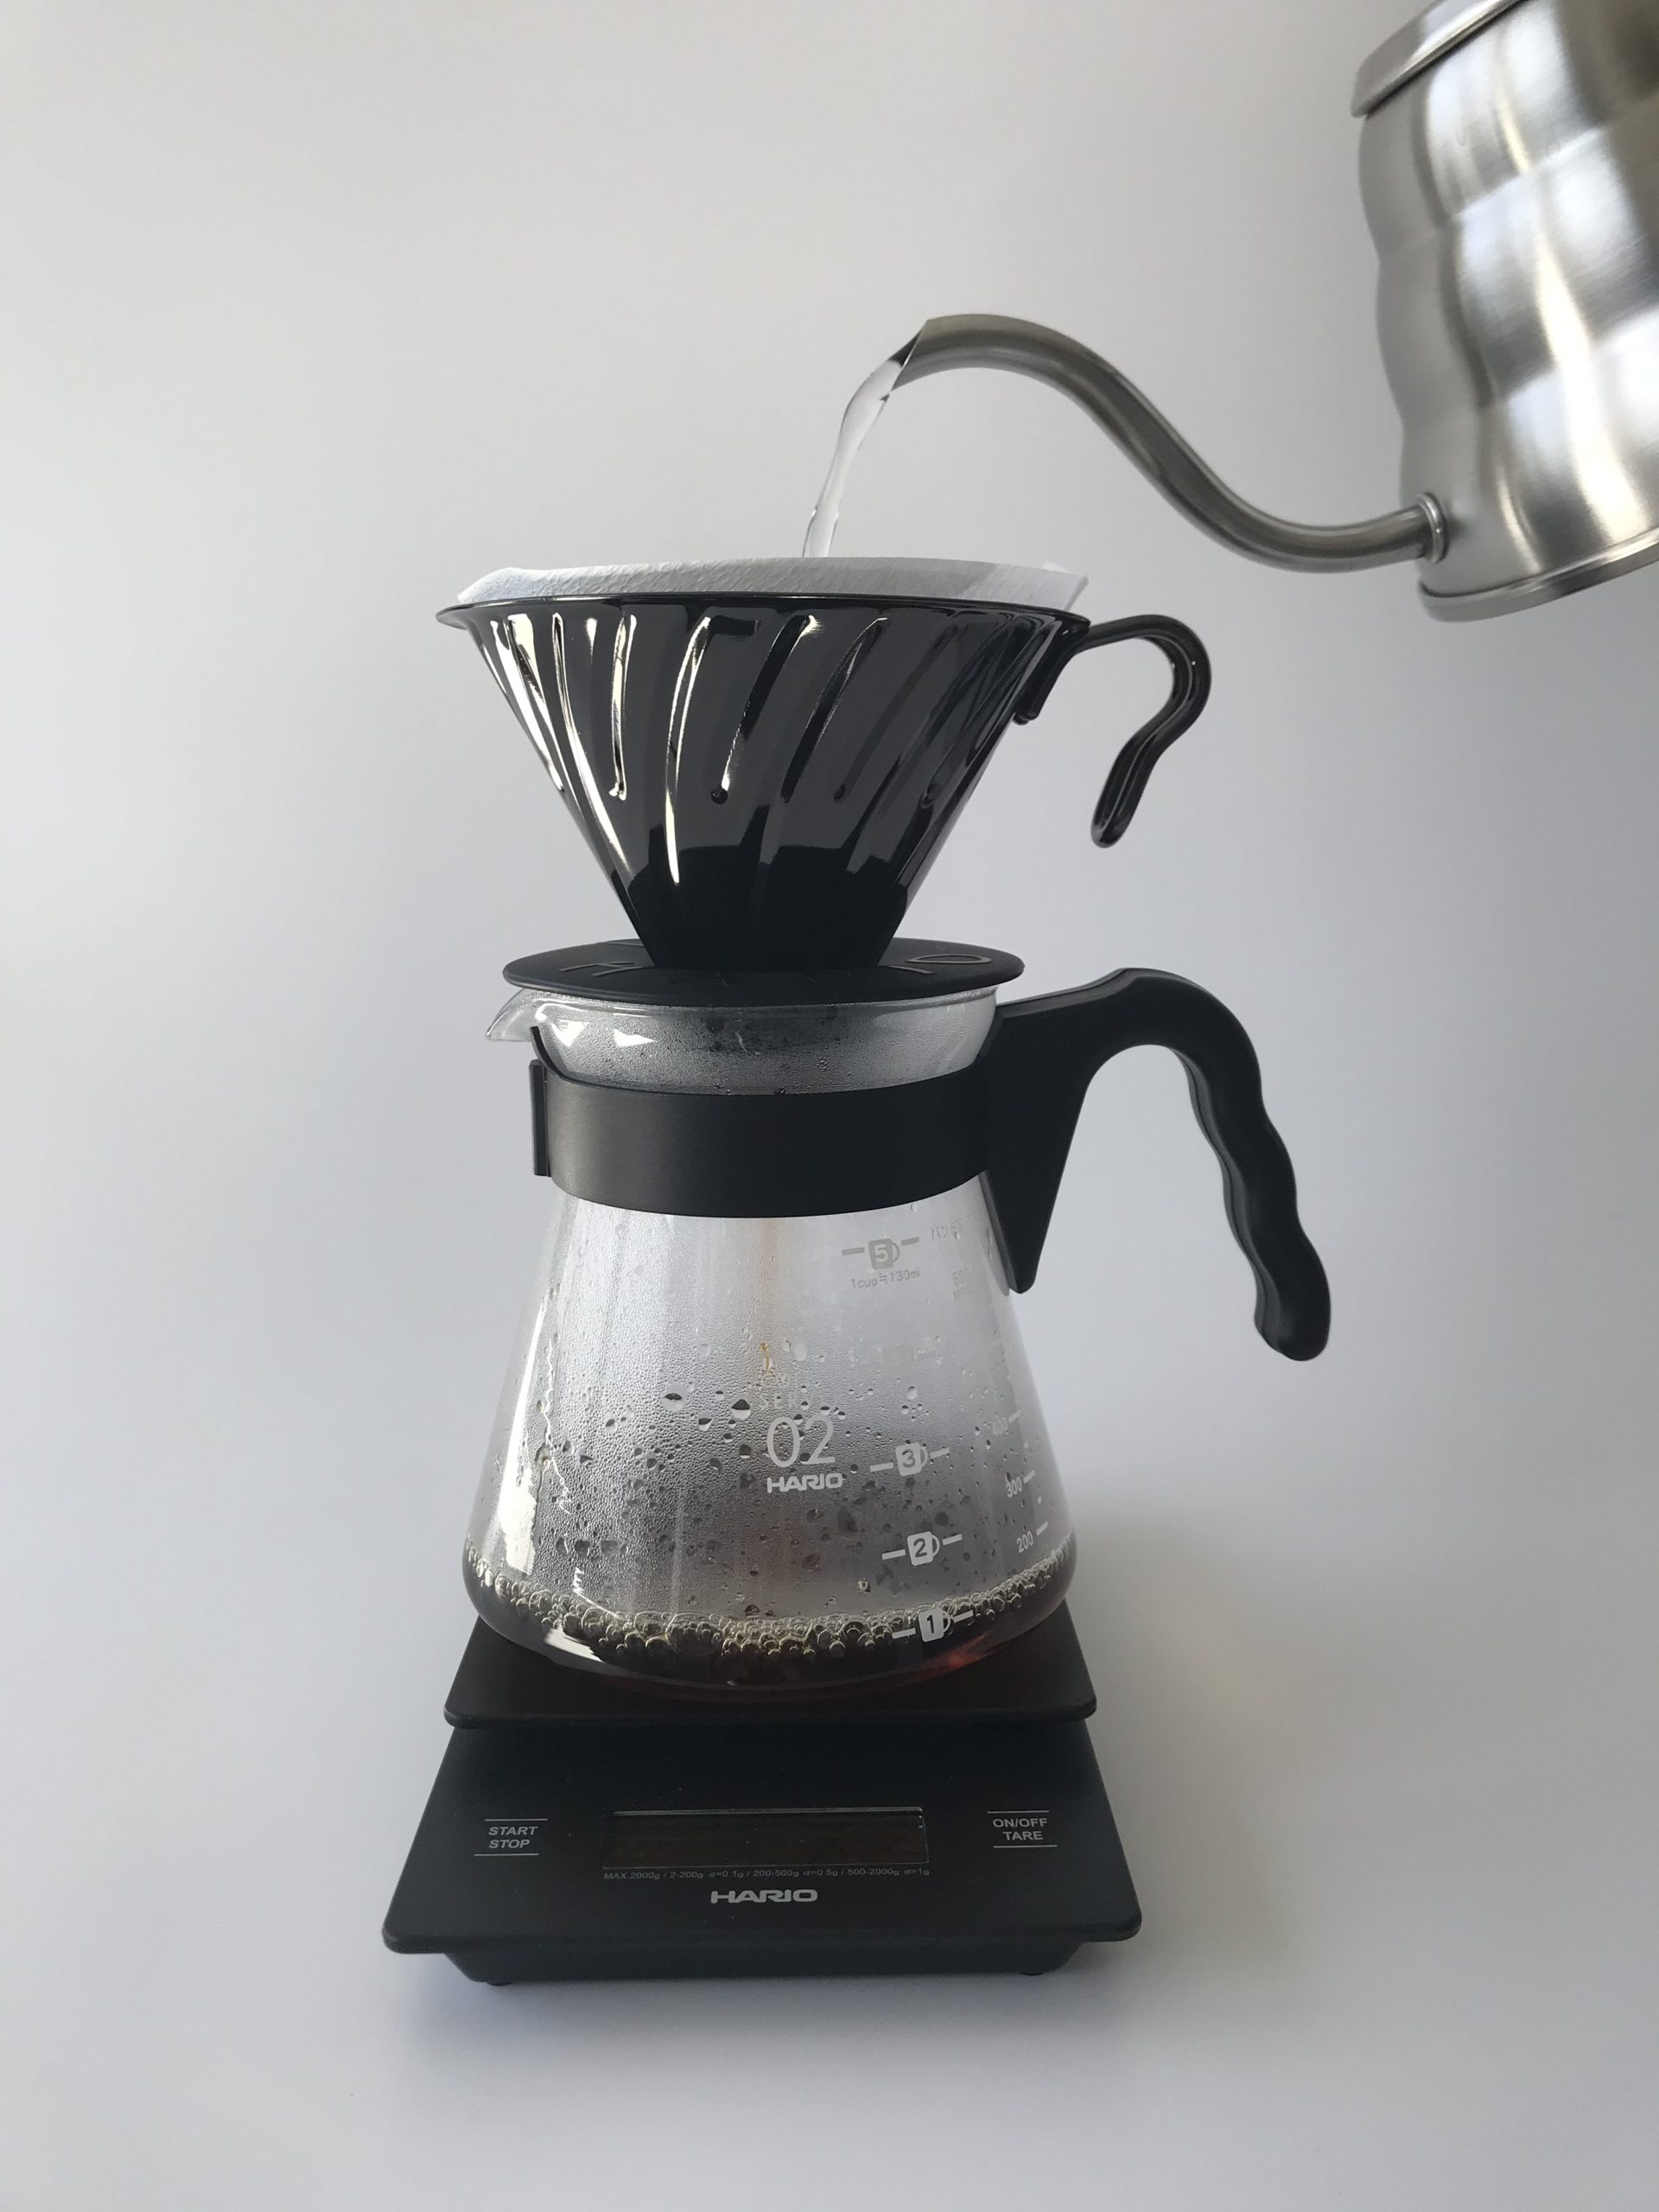 Schwarzer Kaffee zubereitet im Handfilter